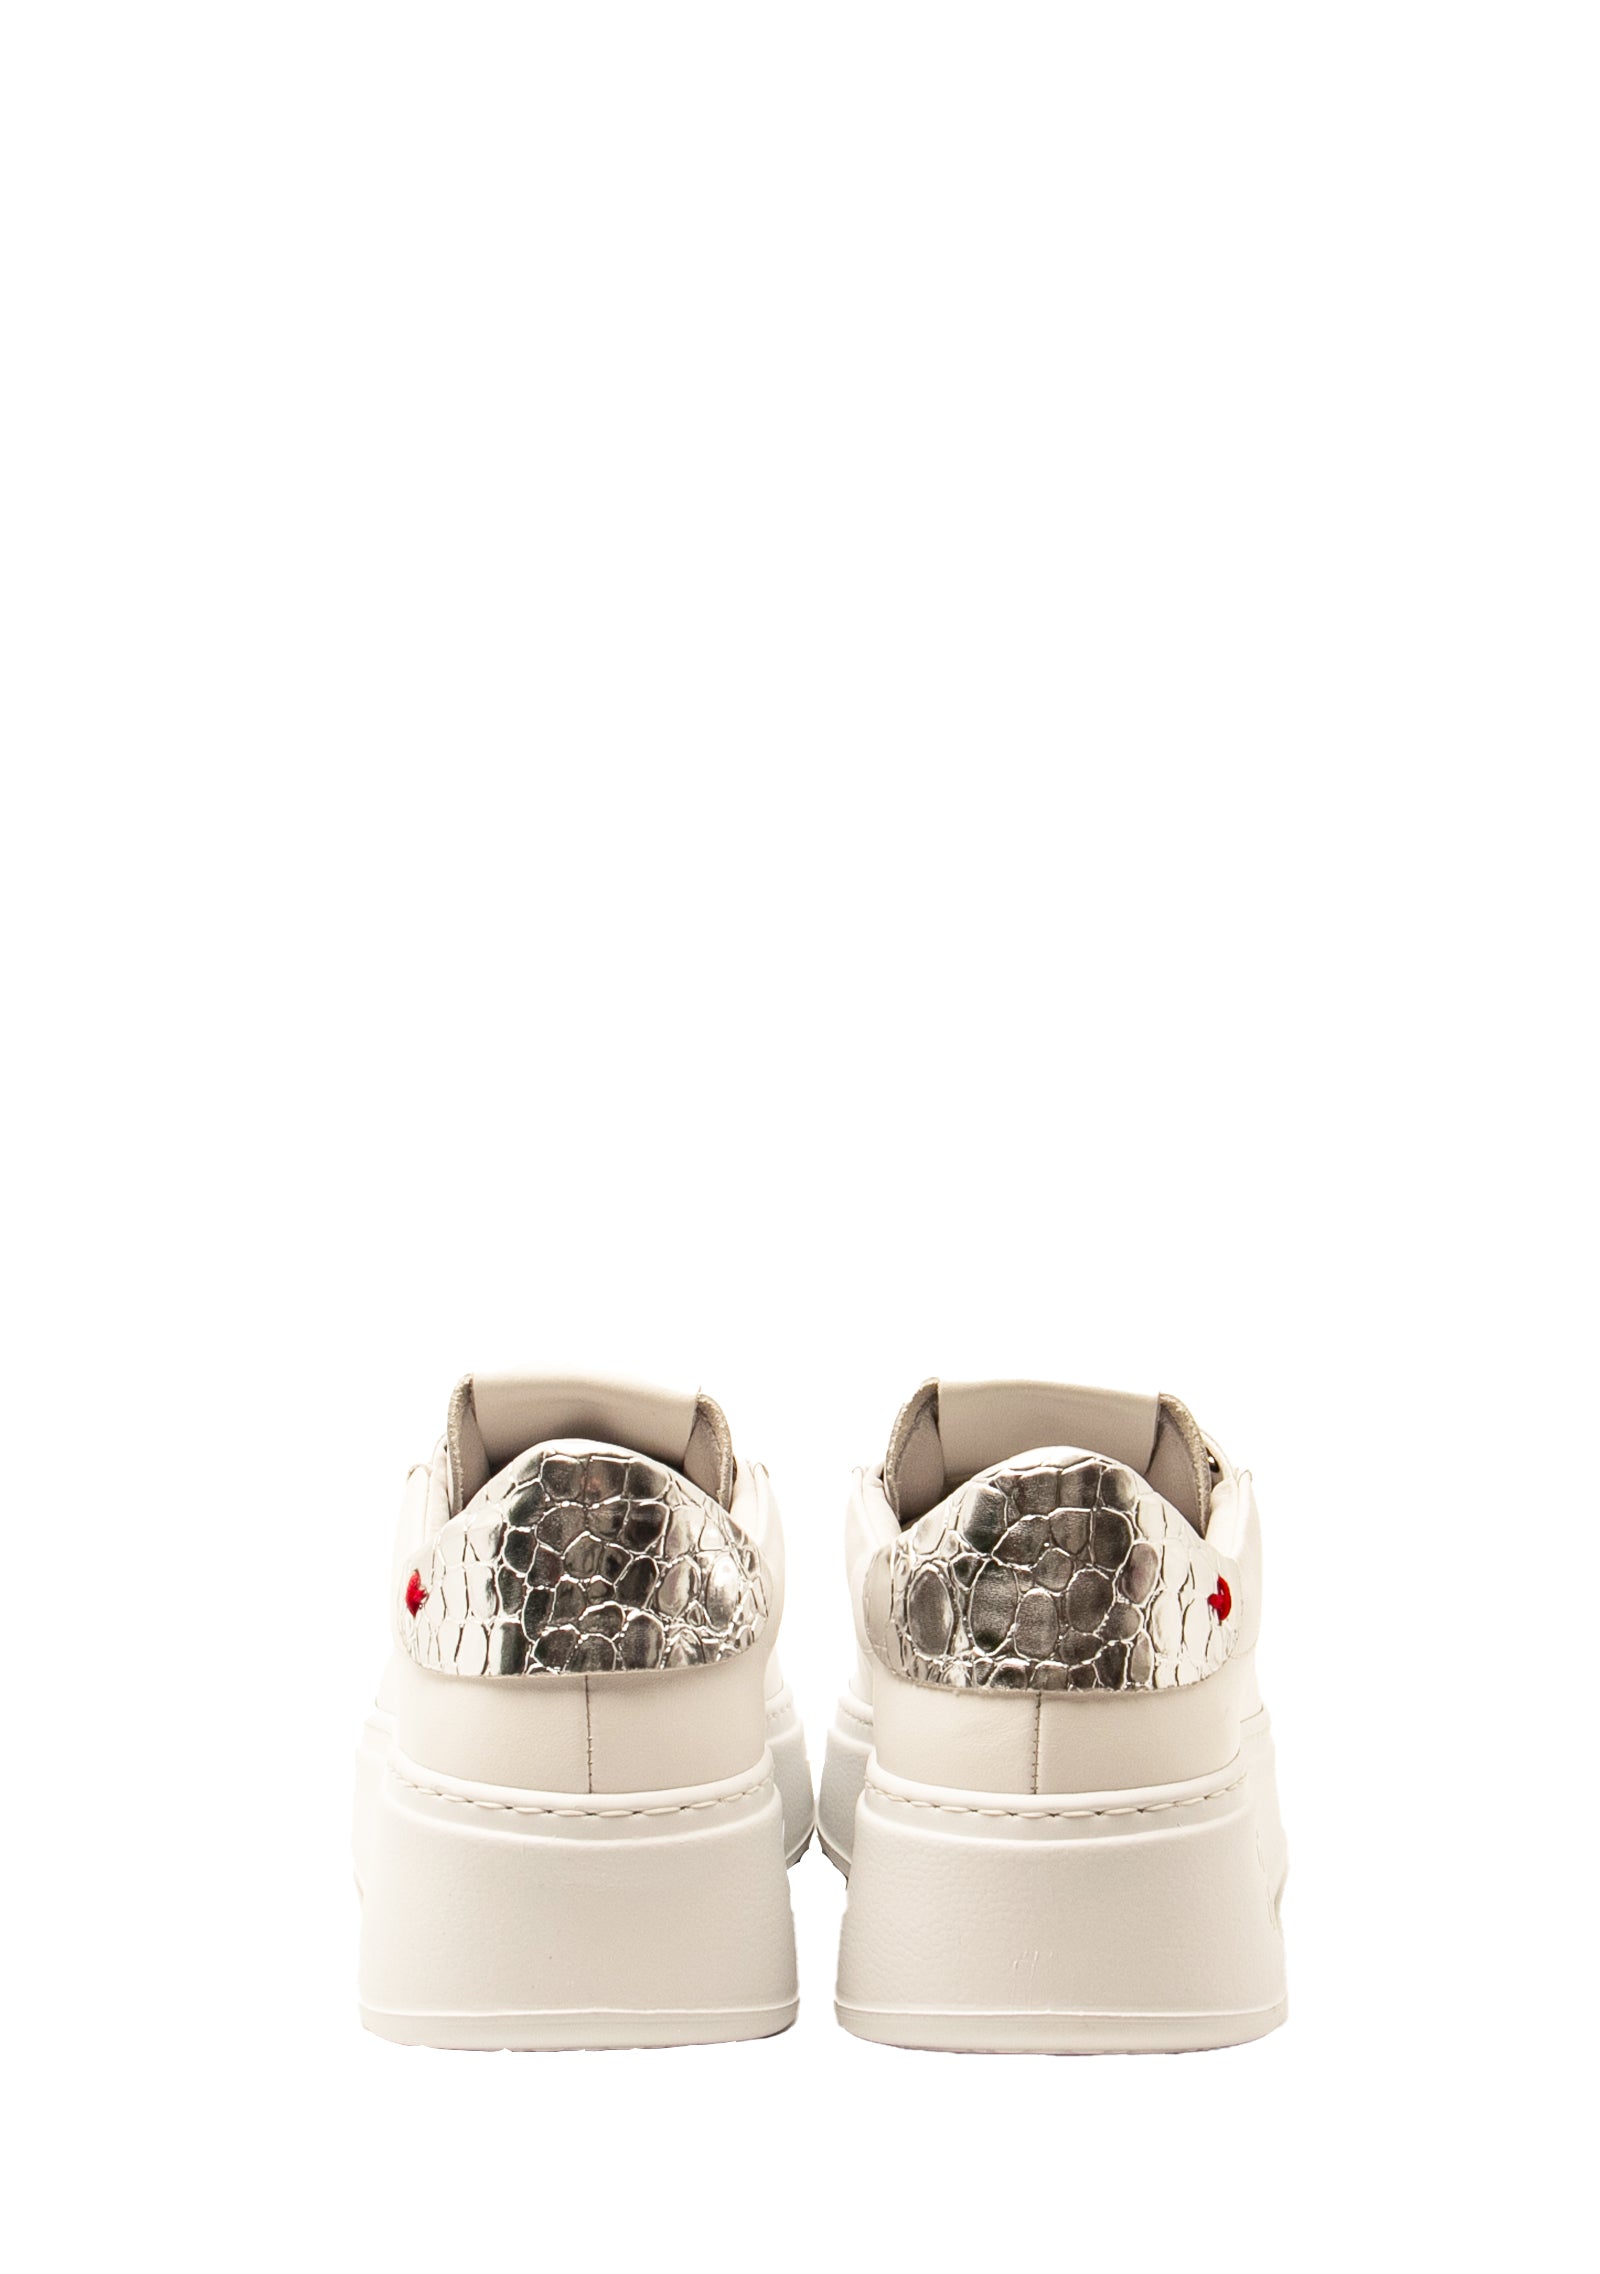 Sneakers PIA76 in bianco e argento